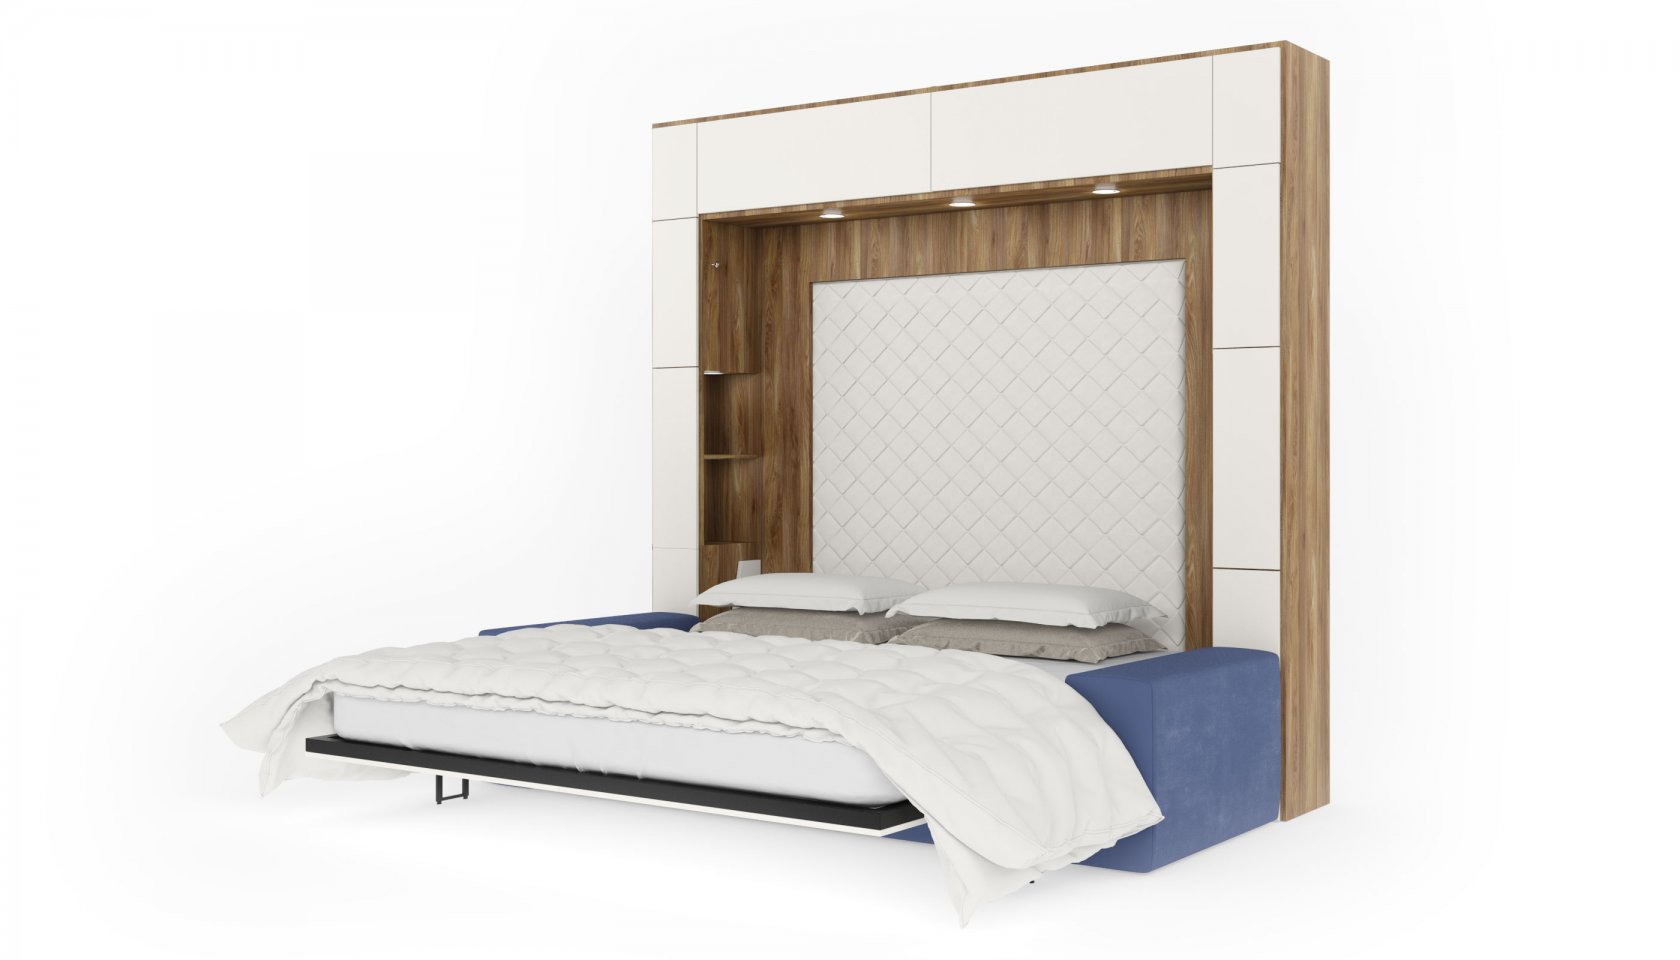 Мебель конструктор кровать шкаф